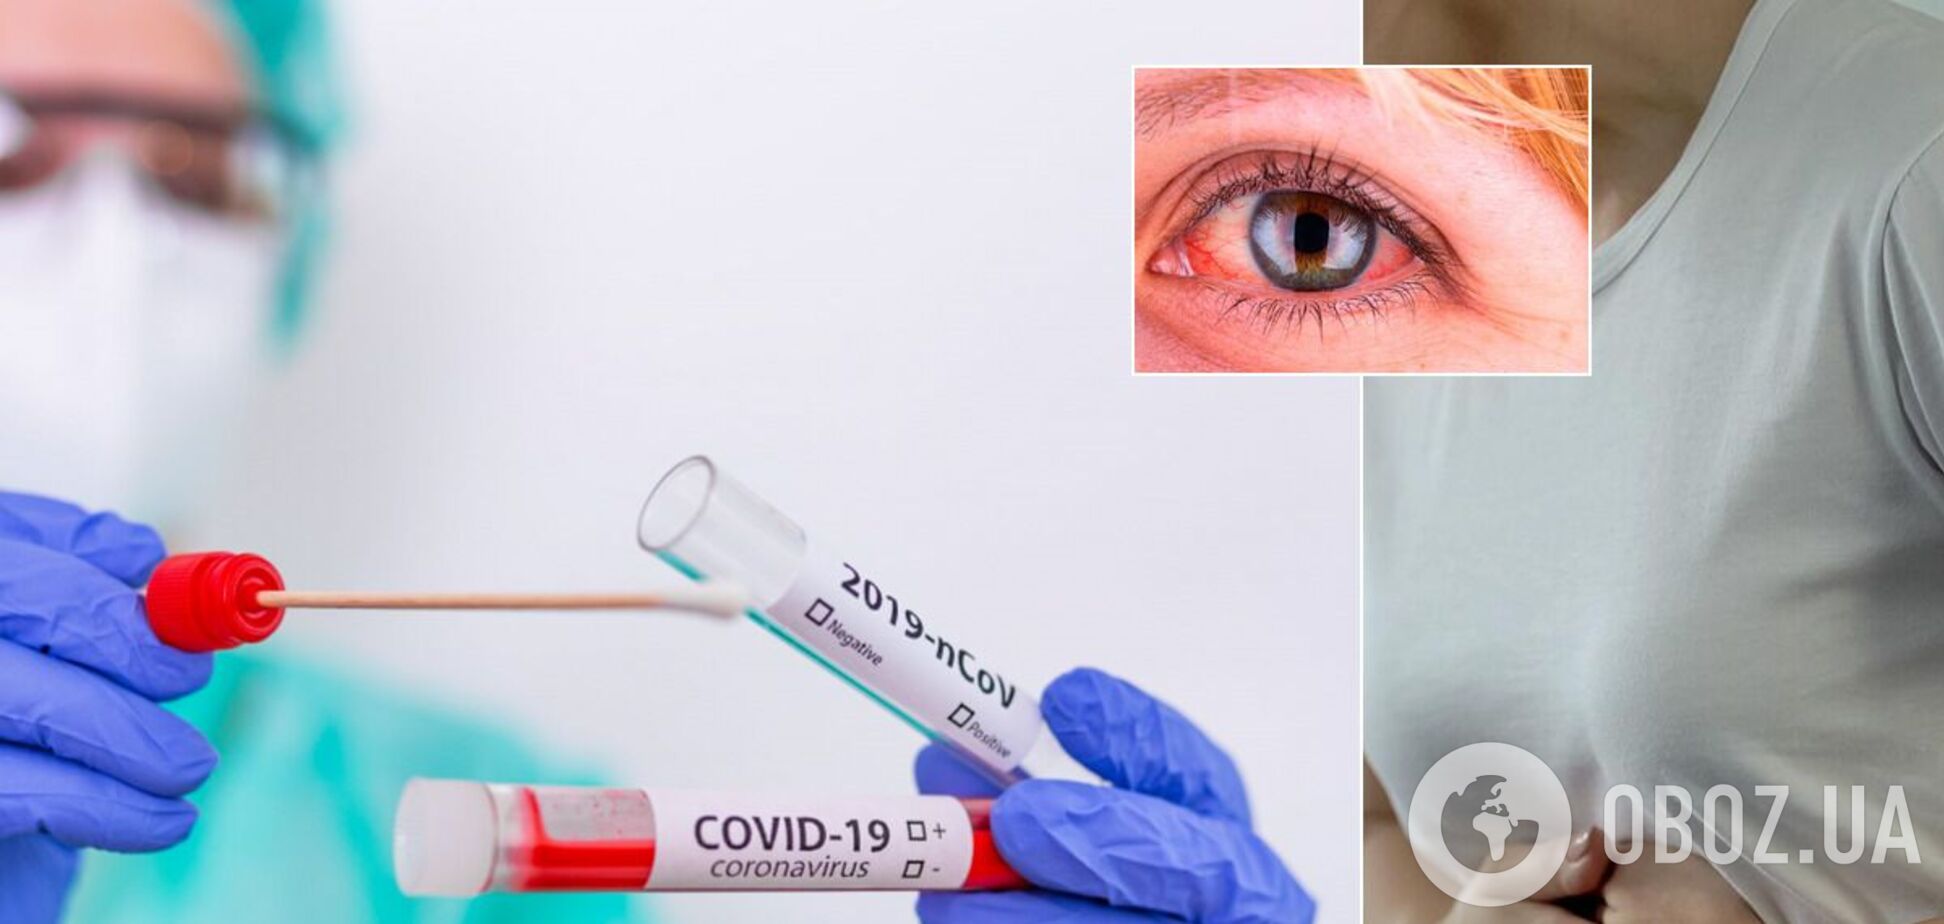 Ученые назвали вероятные первые признаки коронавируса